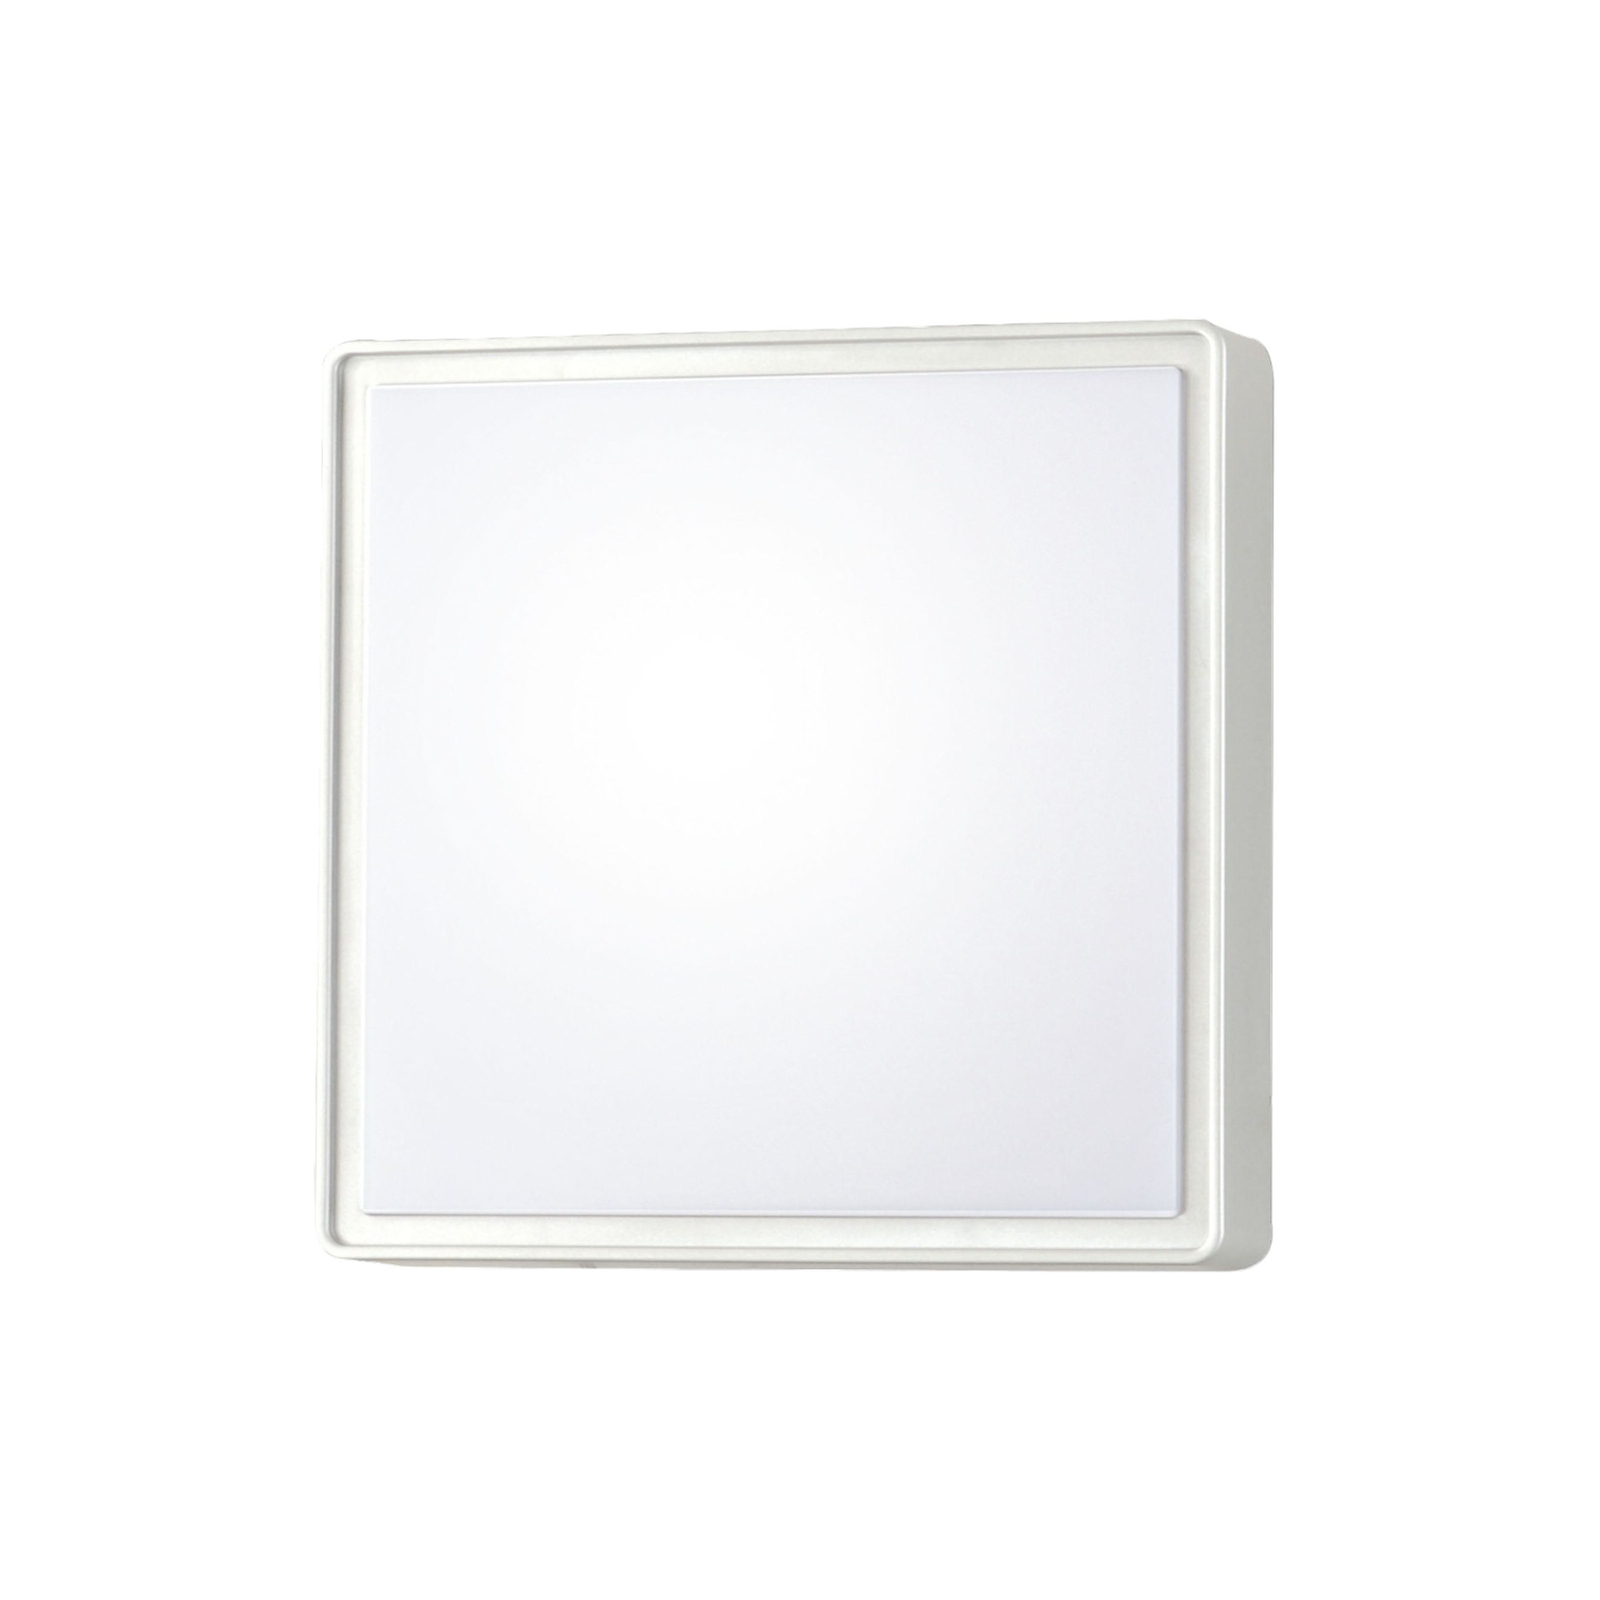 Oban LED wall light, 30 cm x 30 cm, white, IP65